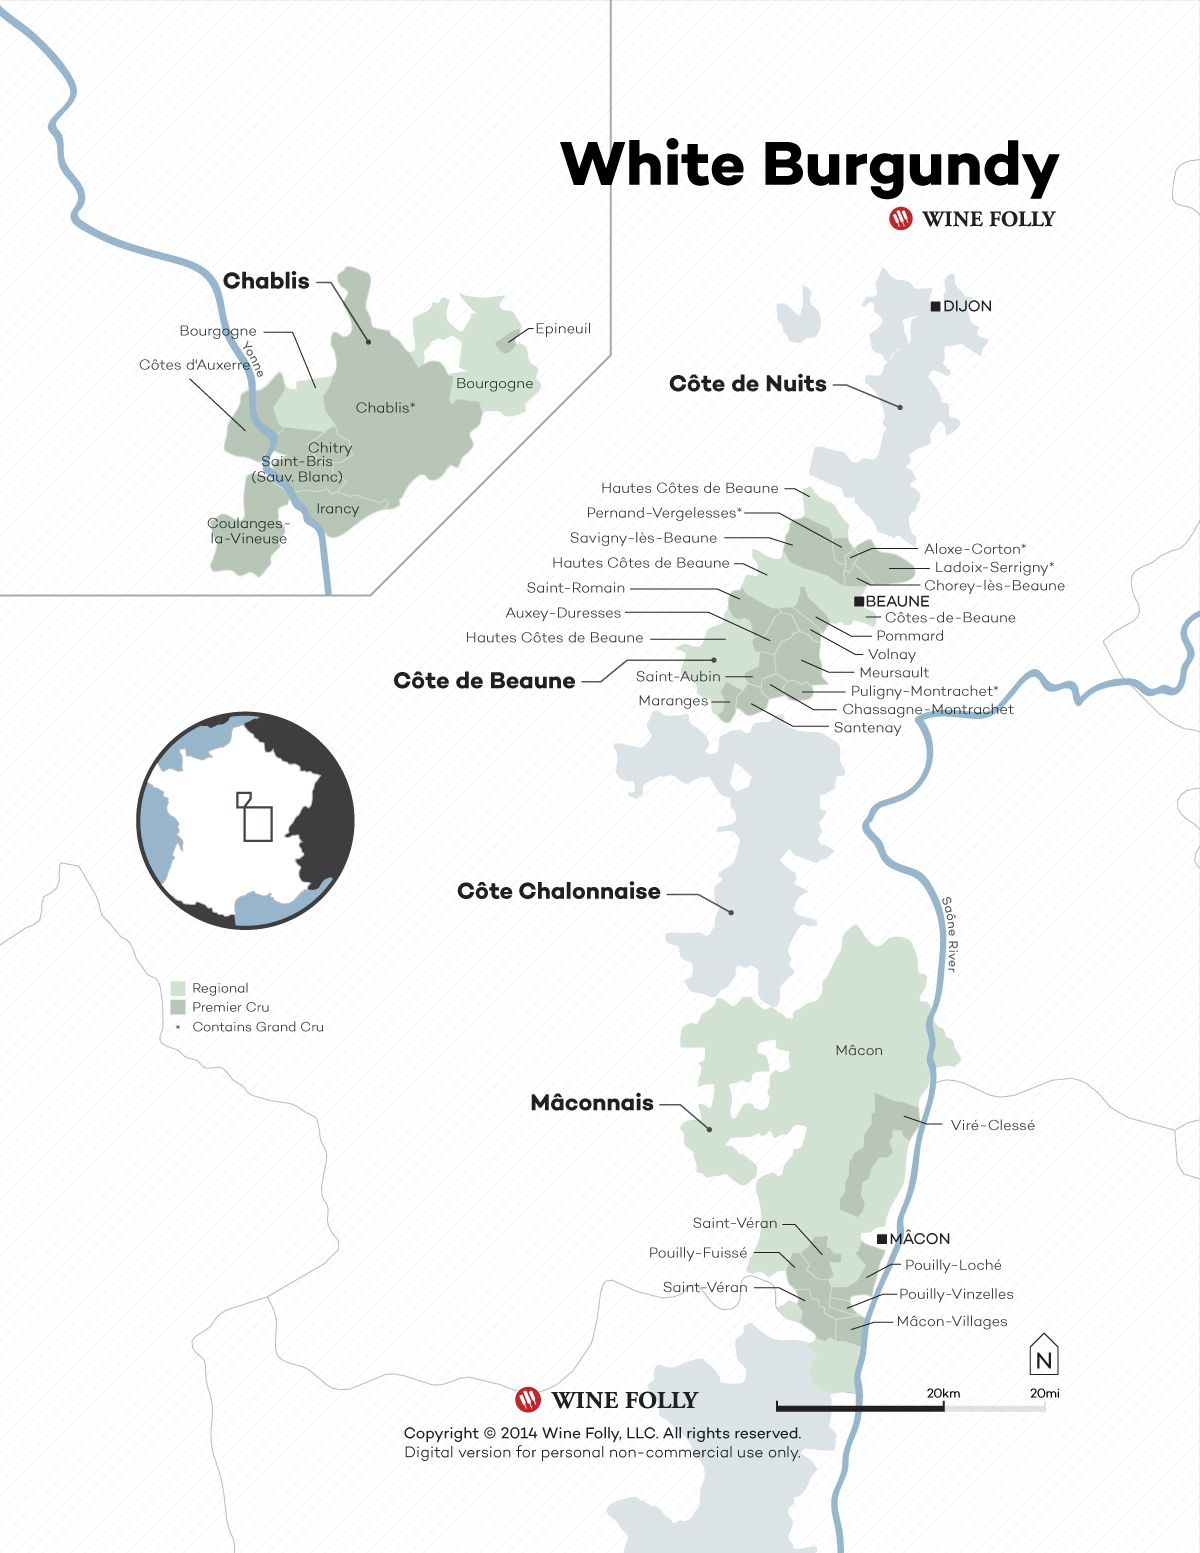 מפת יין בורגון לבן בצרפת מאת Wine Folly 2015